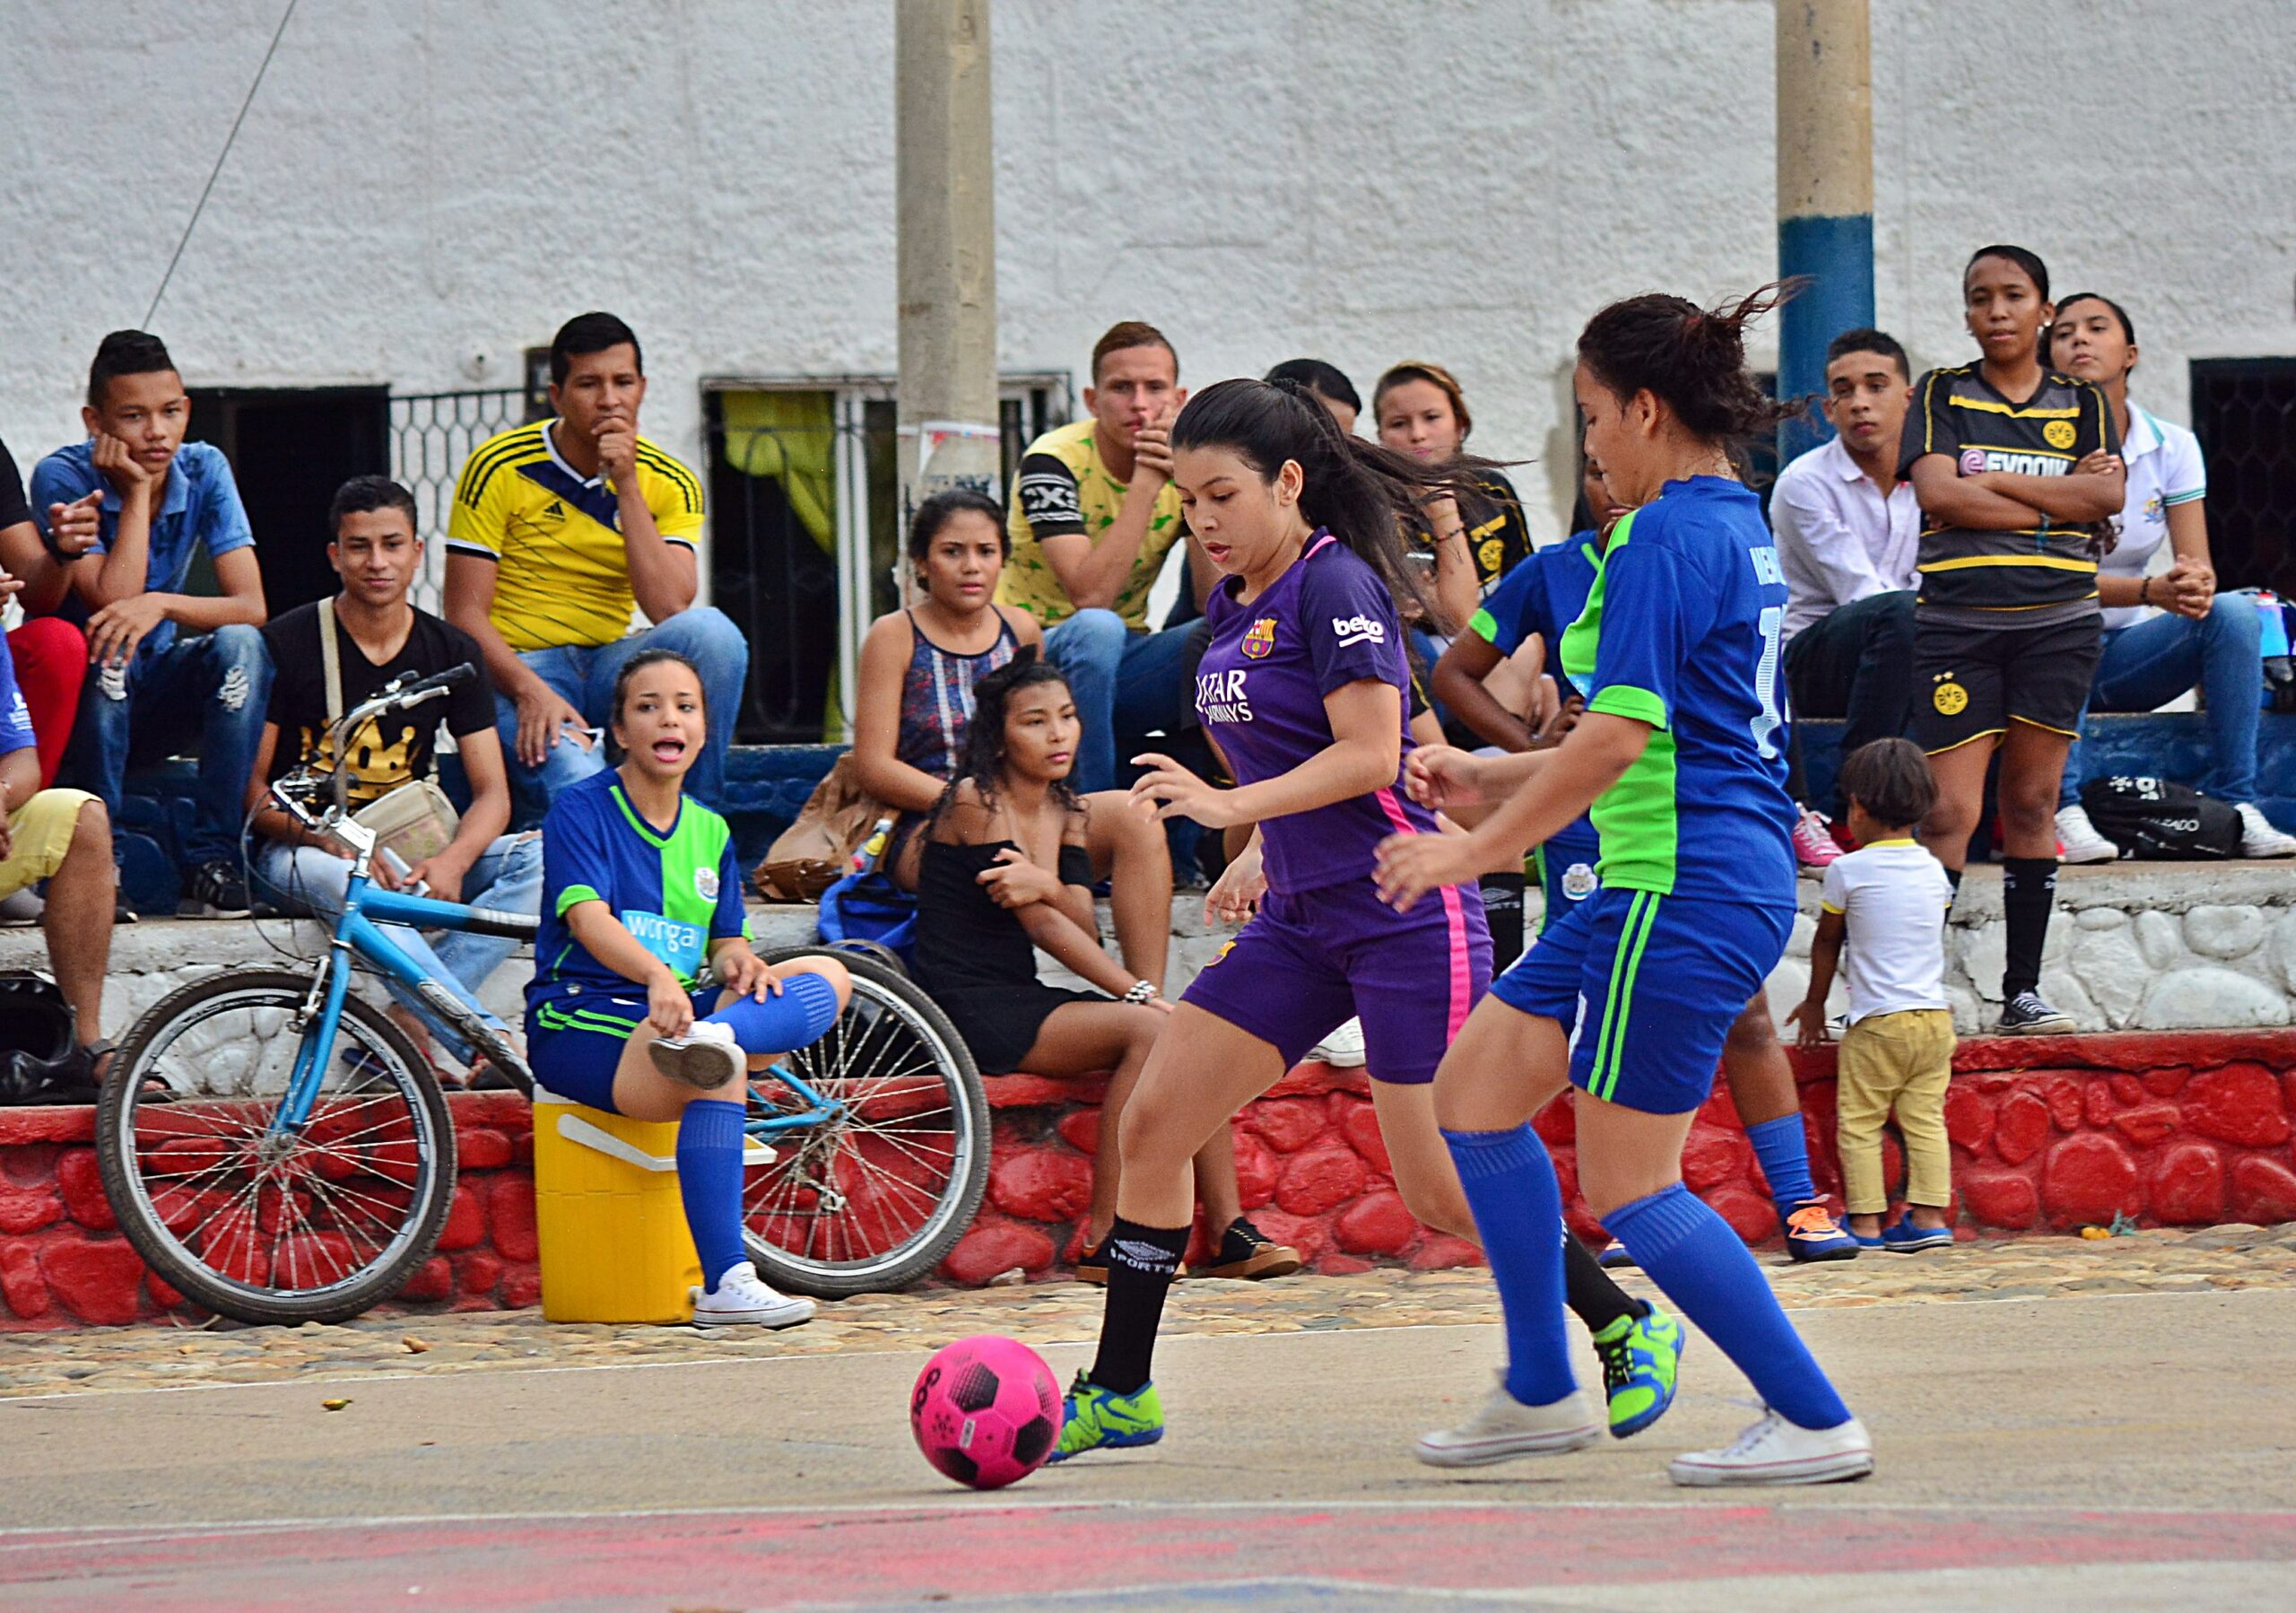 El Campeonato Comunitario de Microfútbol se realizará durante tres meses en las categorías masculina y femenina. / FOTO: CORTESÍA.
